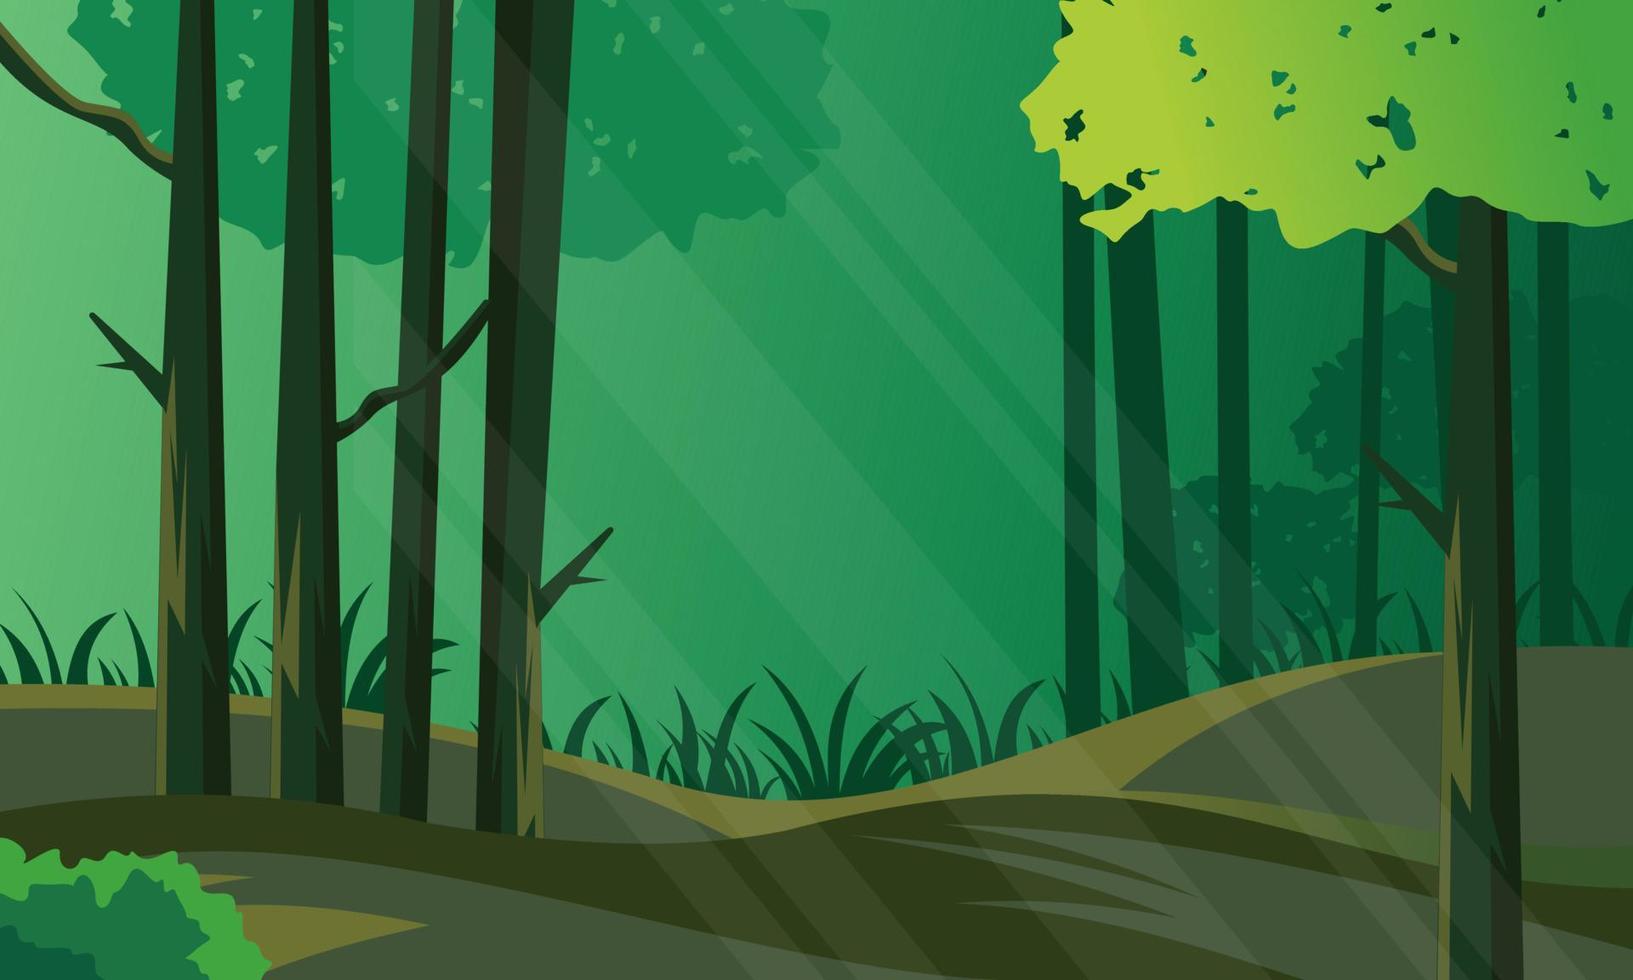 paesaggio della giungla. panorama con piante tropicali, liane e tronco d'albero con luce solare che cade su erba verde a terra vettore